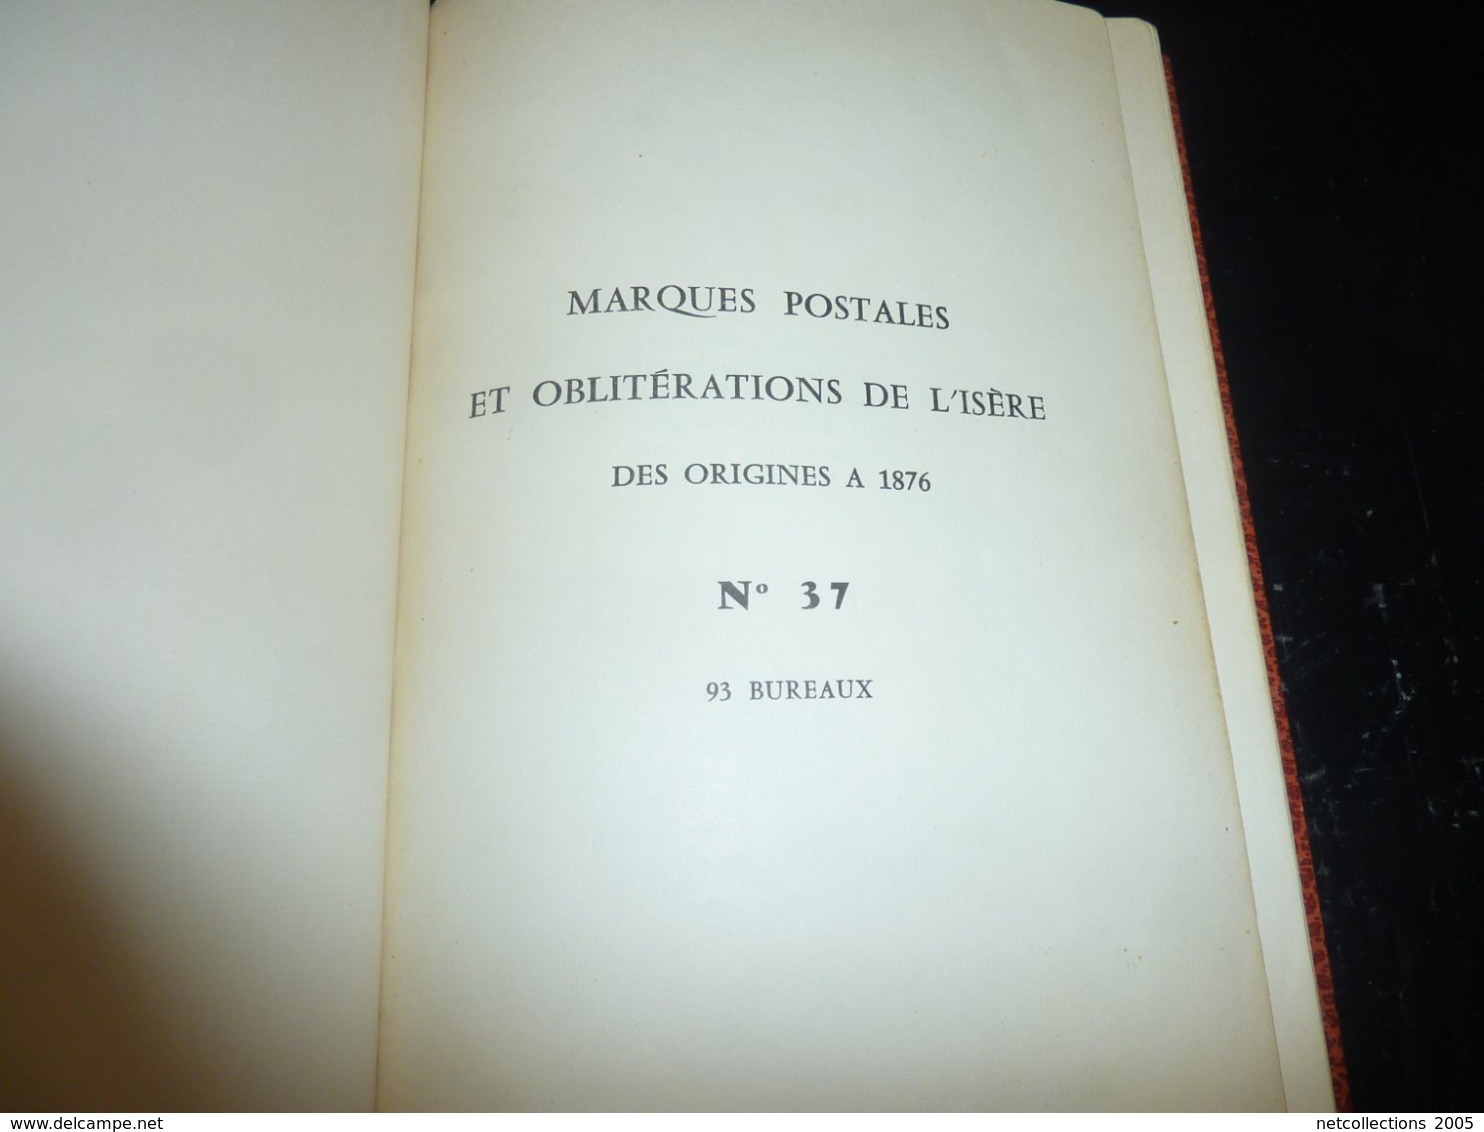 MARQUES POSTALES ET OBLITERATIONS DE L'ISERE DES ORIGINES A 1876 N°37 - " 93 Bureaux "  - PHILATELIE STAMPS BOOK (C.B) - Cancellations